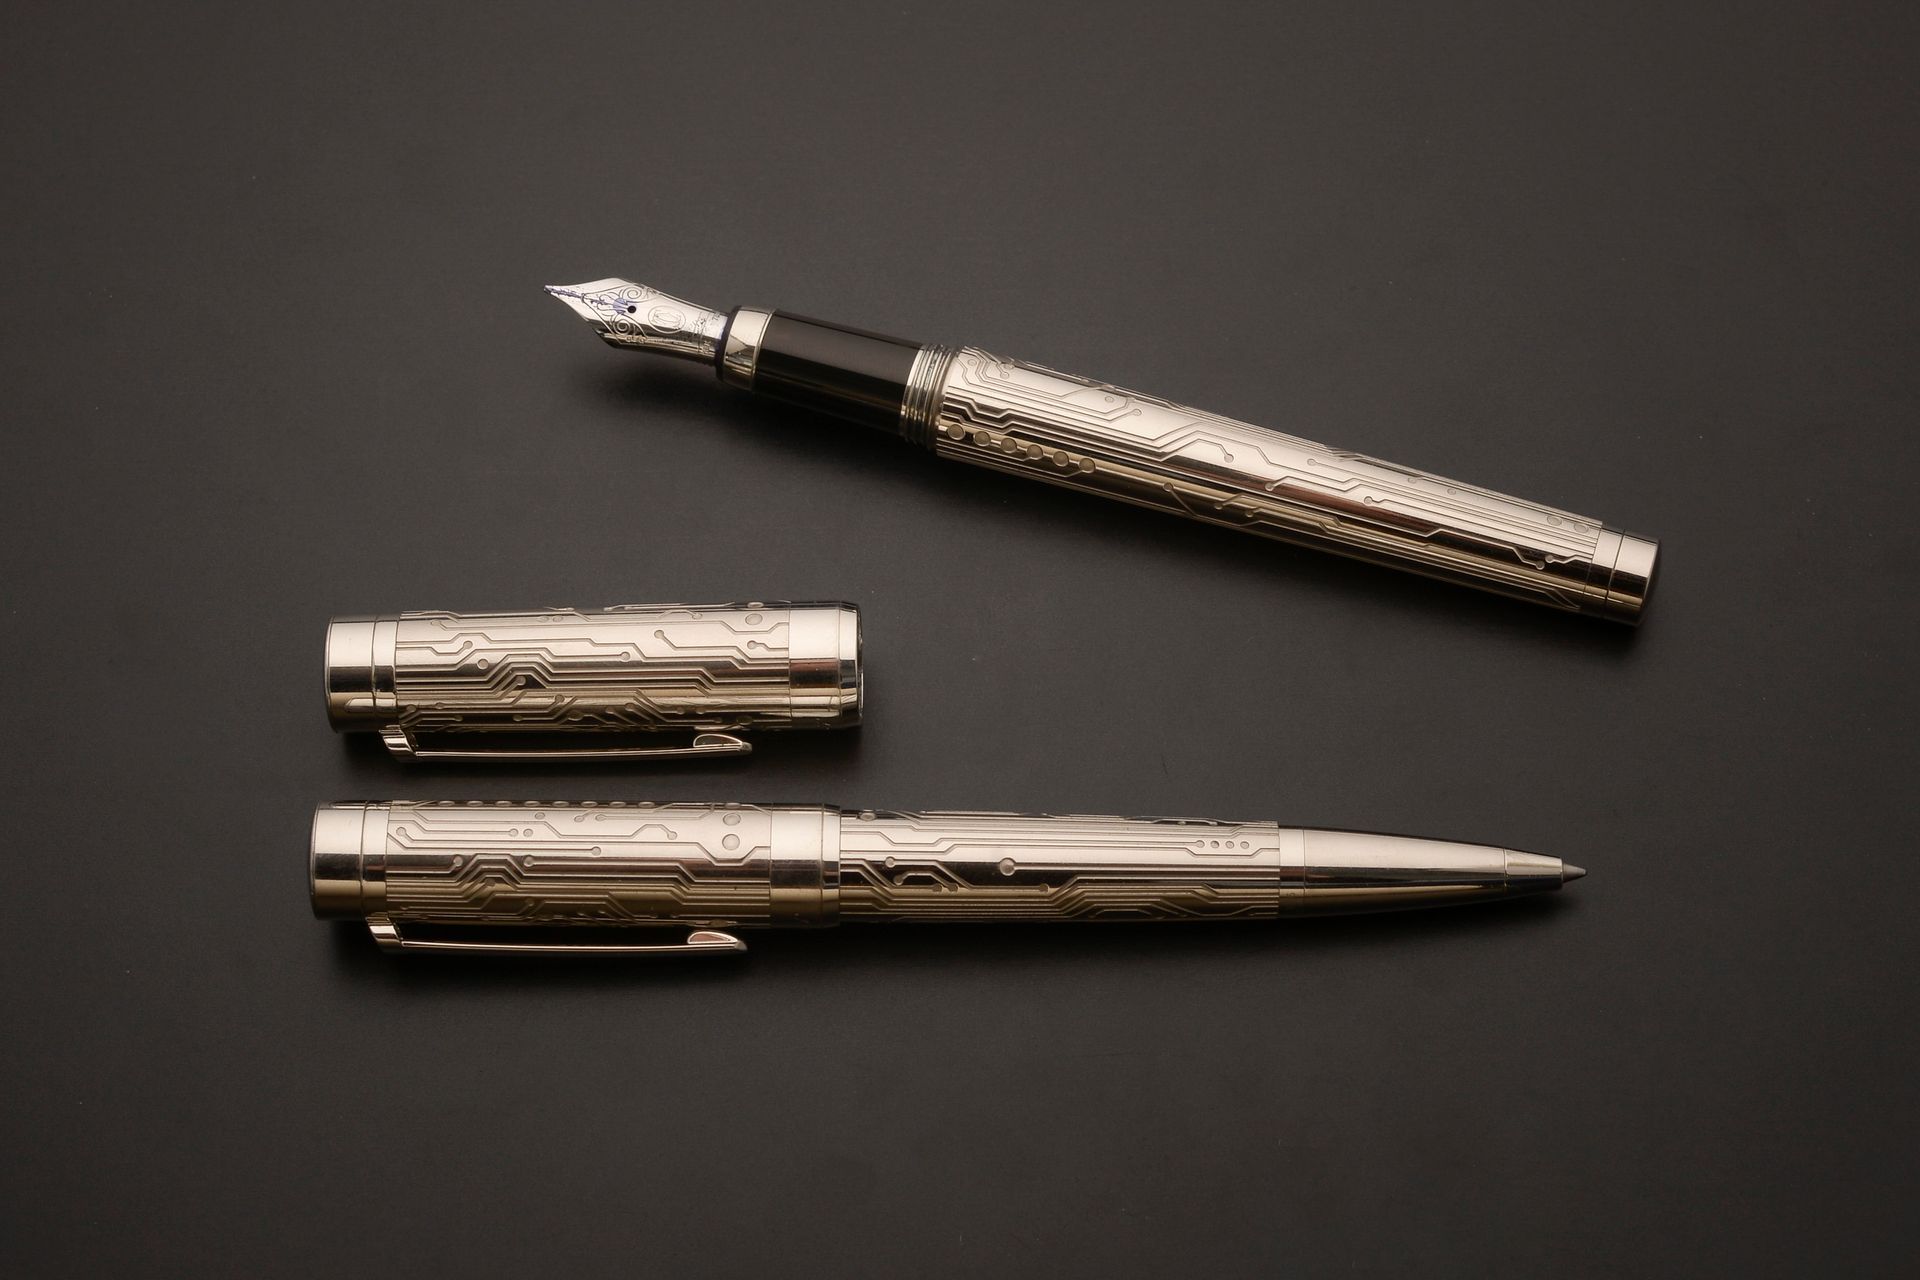 Null 卡地亚 "帕夏"。
套装包括一支钢笔和一支圆珠笔，笔身和属性为镀银金属，刻有电路，笔尖为18K白金D型切割，填充有笔芯。 
编号为103605（钢笔）&hellip;